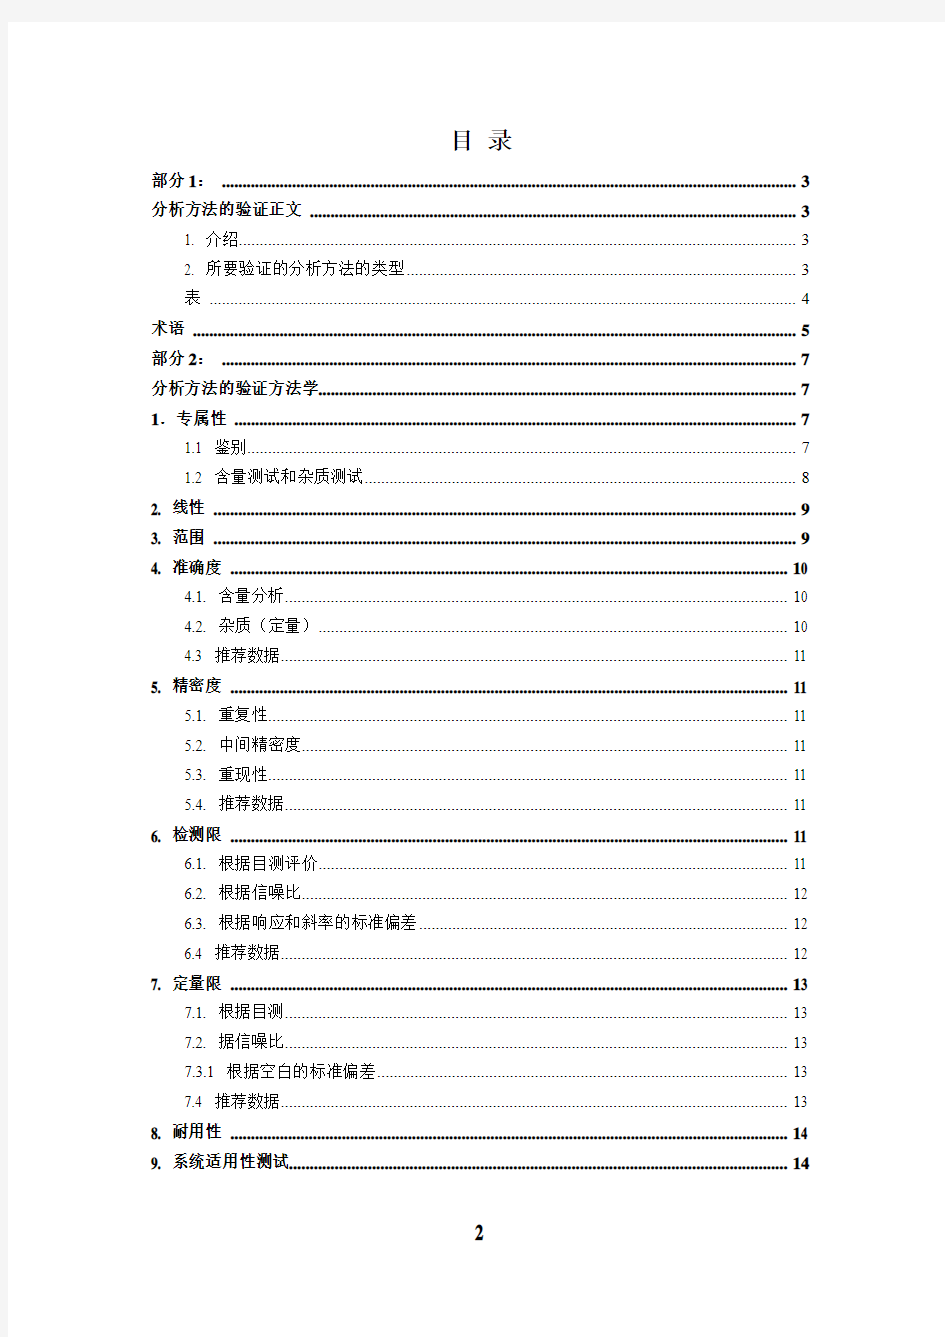 2016年最新中文版 ICH Q2(R1)分析方法验证